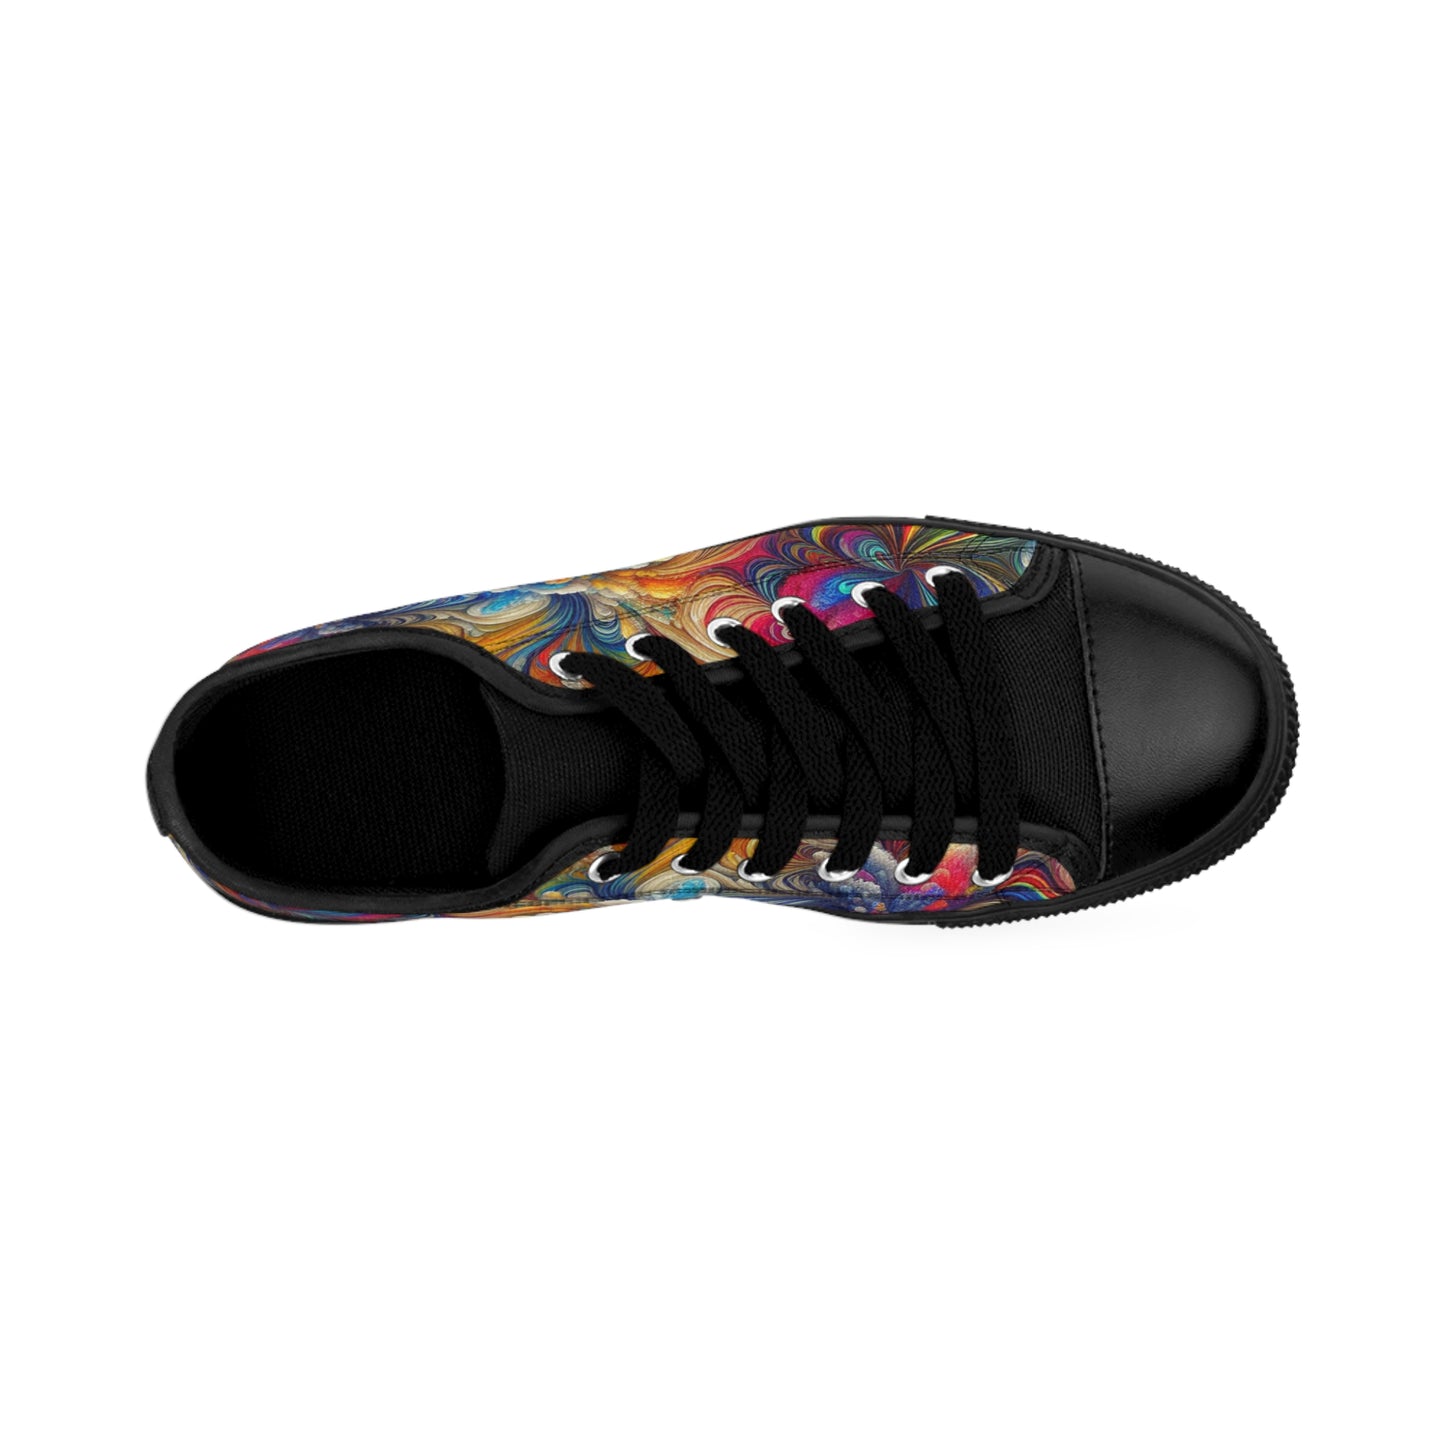 "PsycheBloom Rainbow Canvas"- LowTop Shoes